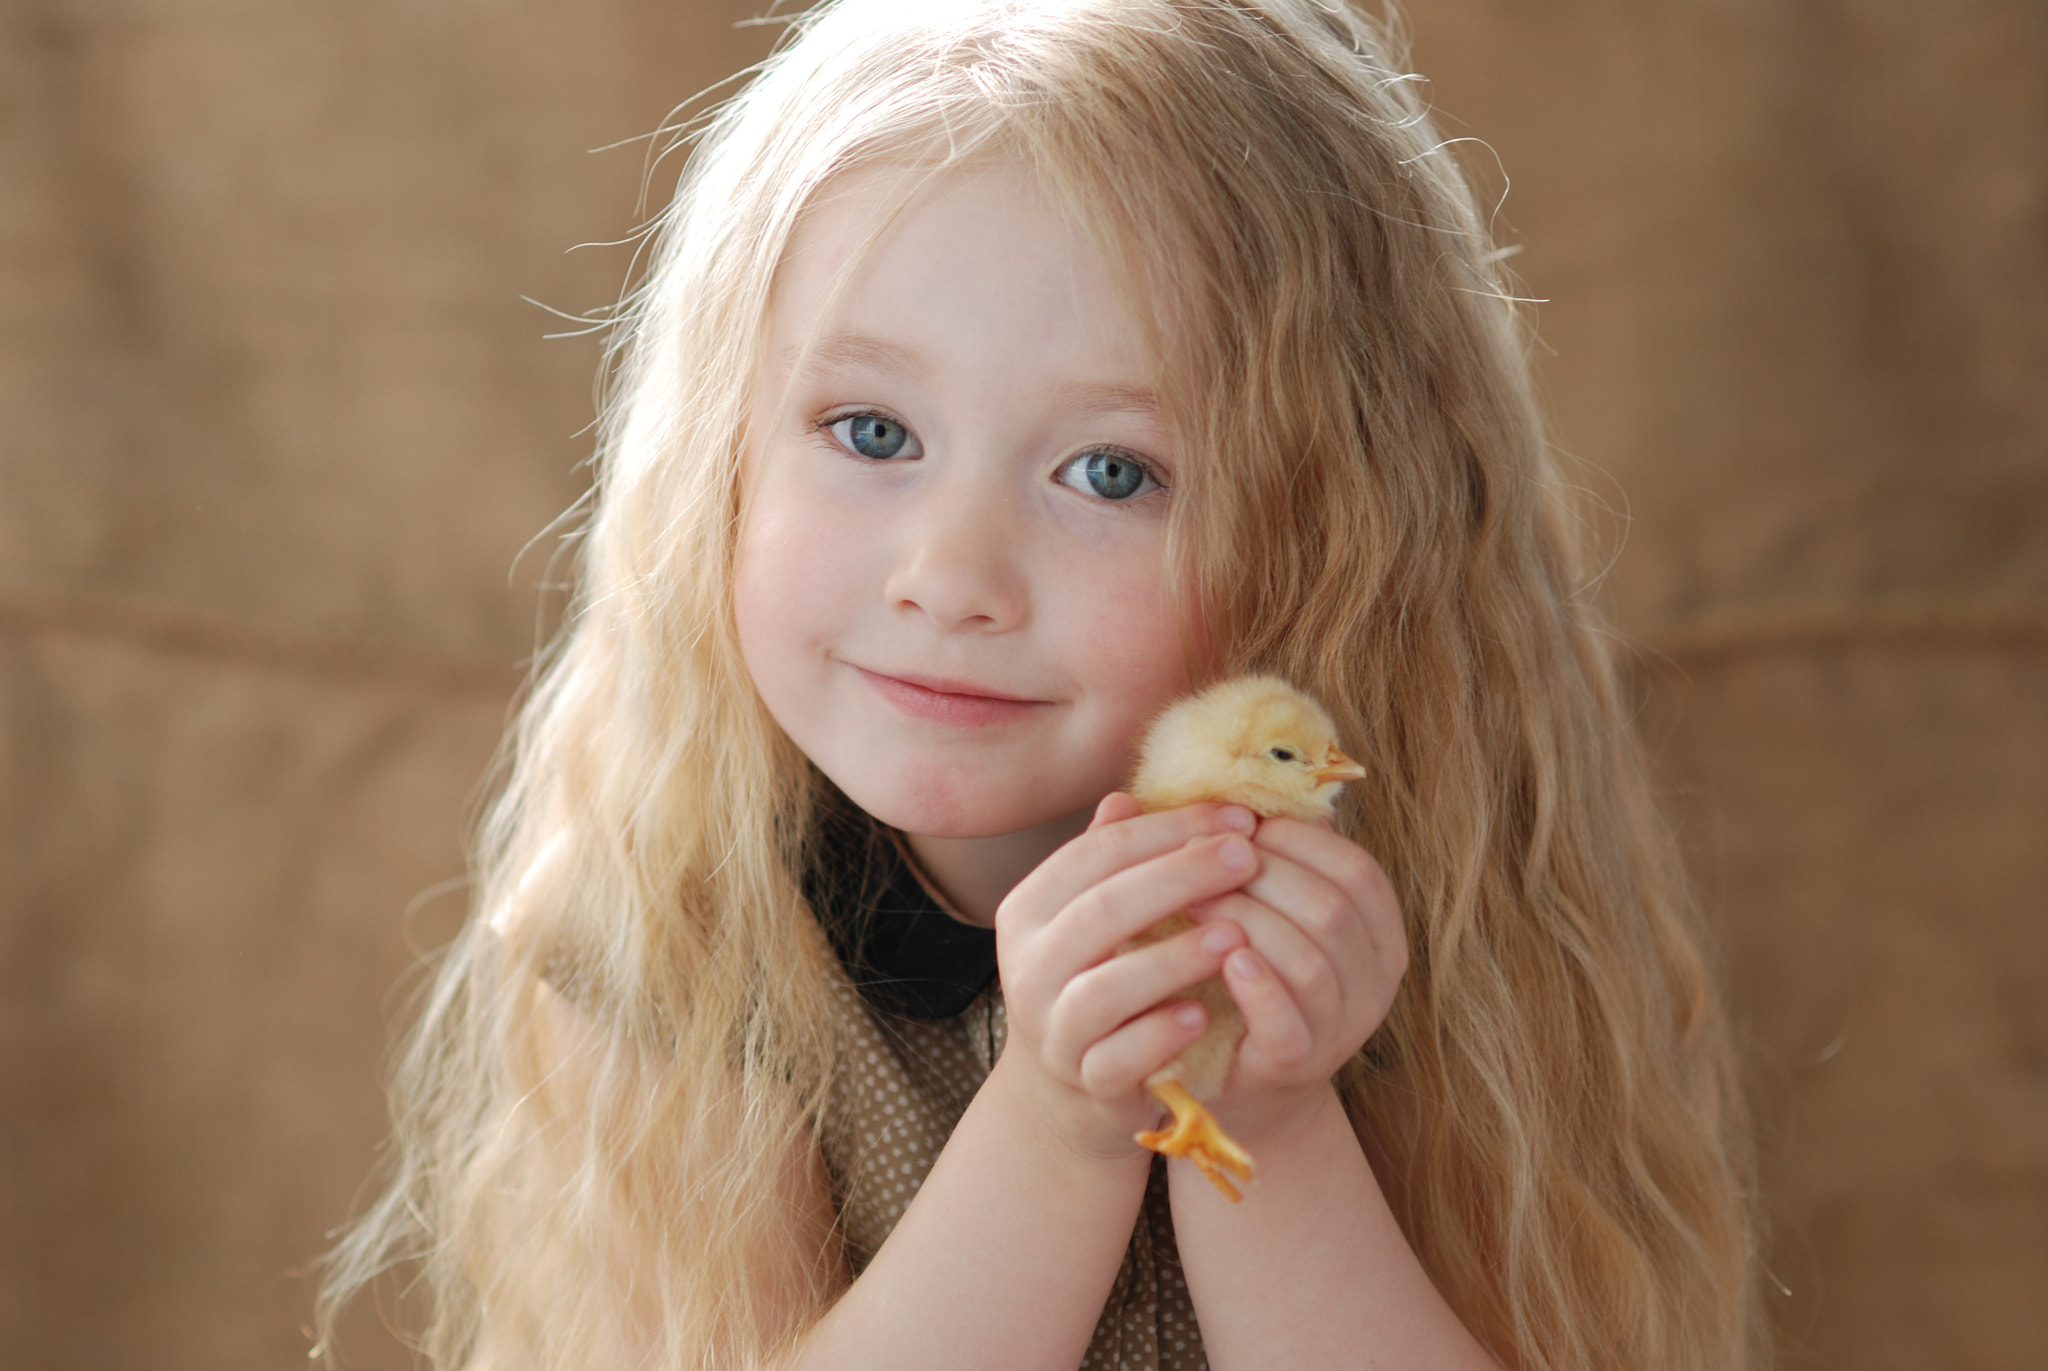 Nikon D80 + Nikon AF Nikkor 85mm F1.8D sample photo. Little girl with chicken photography